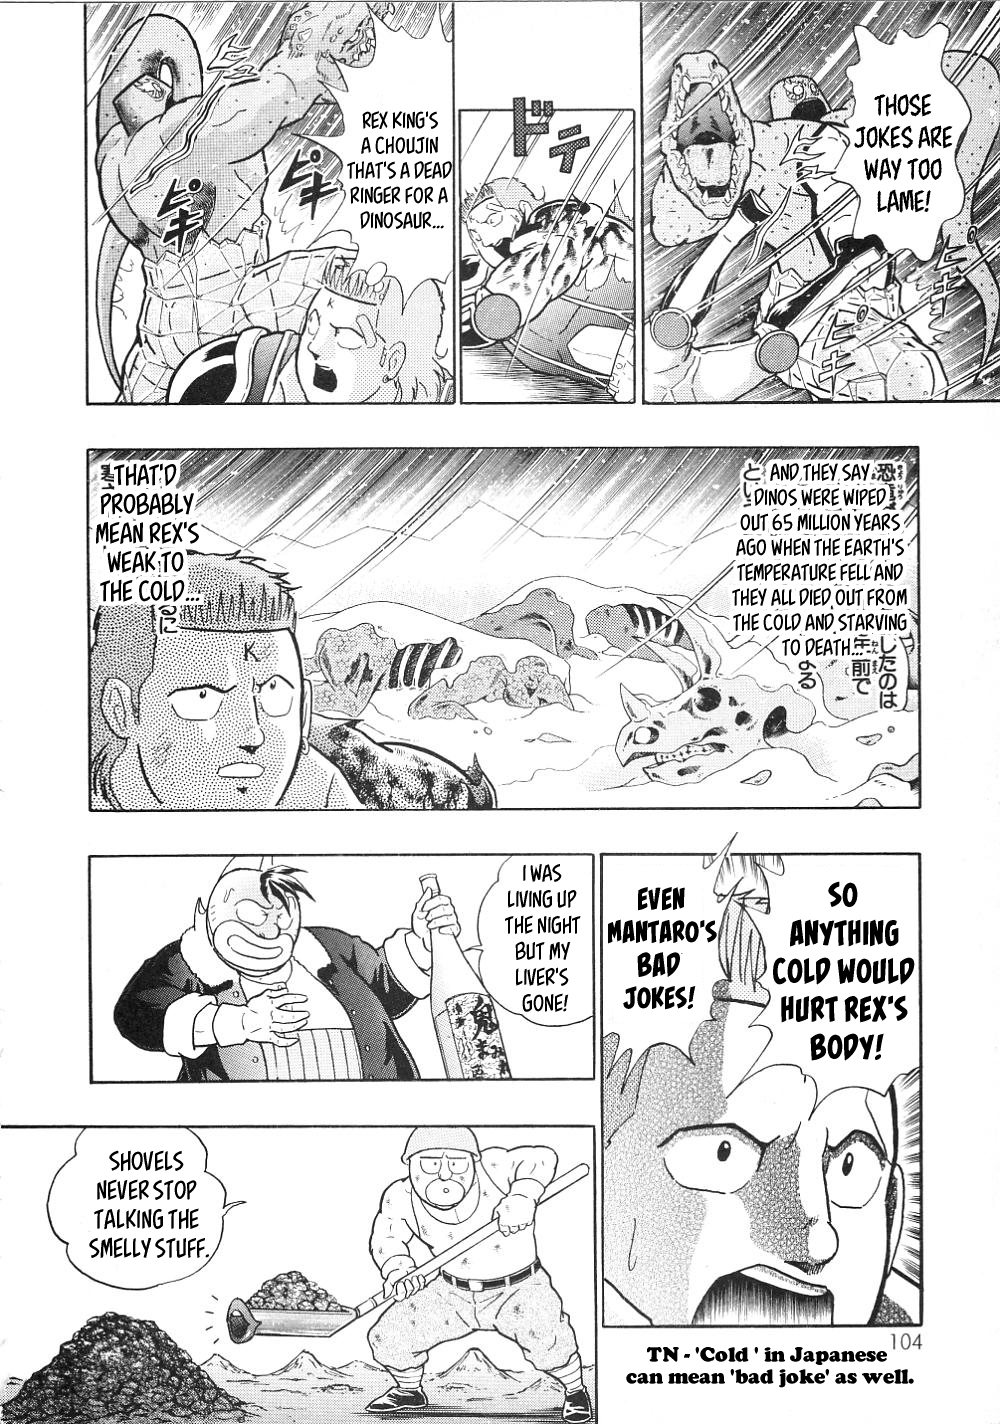 Kinnikuman II Sei: All Choujin Daishingeki Vol. 1 Ch. 9 Frozen All Over!? Ruler of Dinosaurs Rex King!